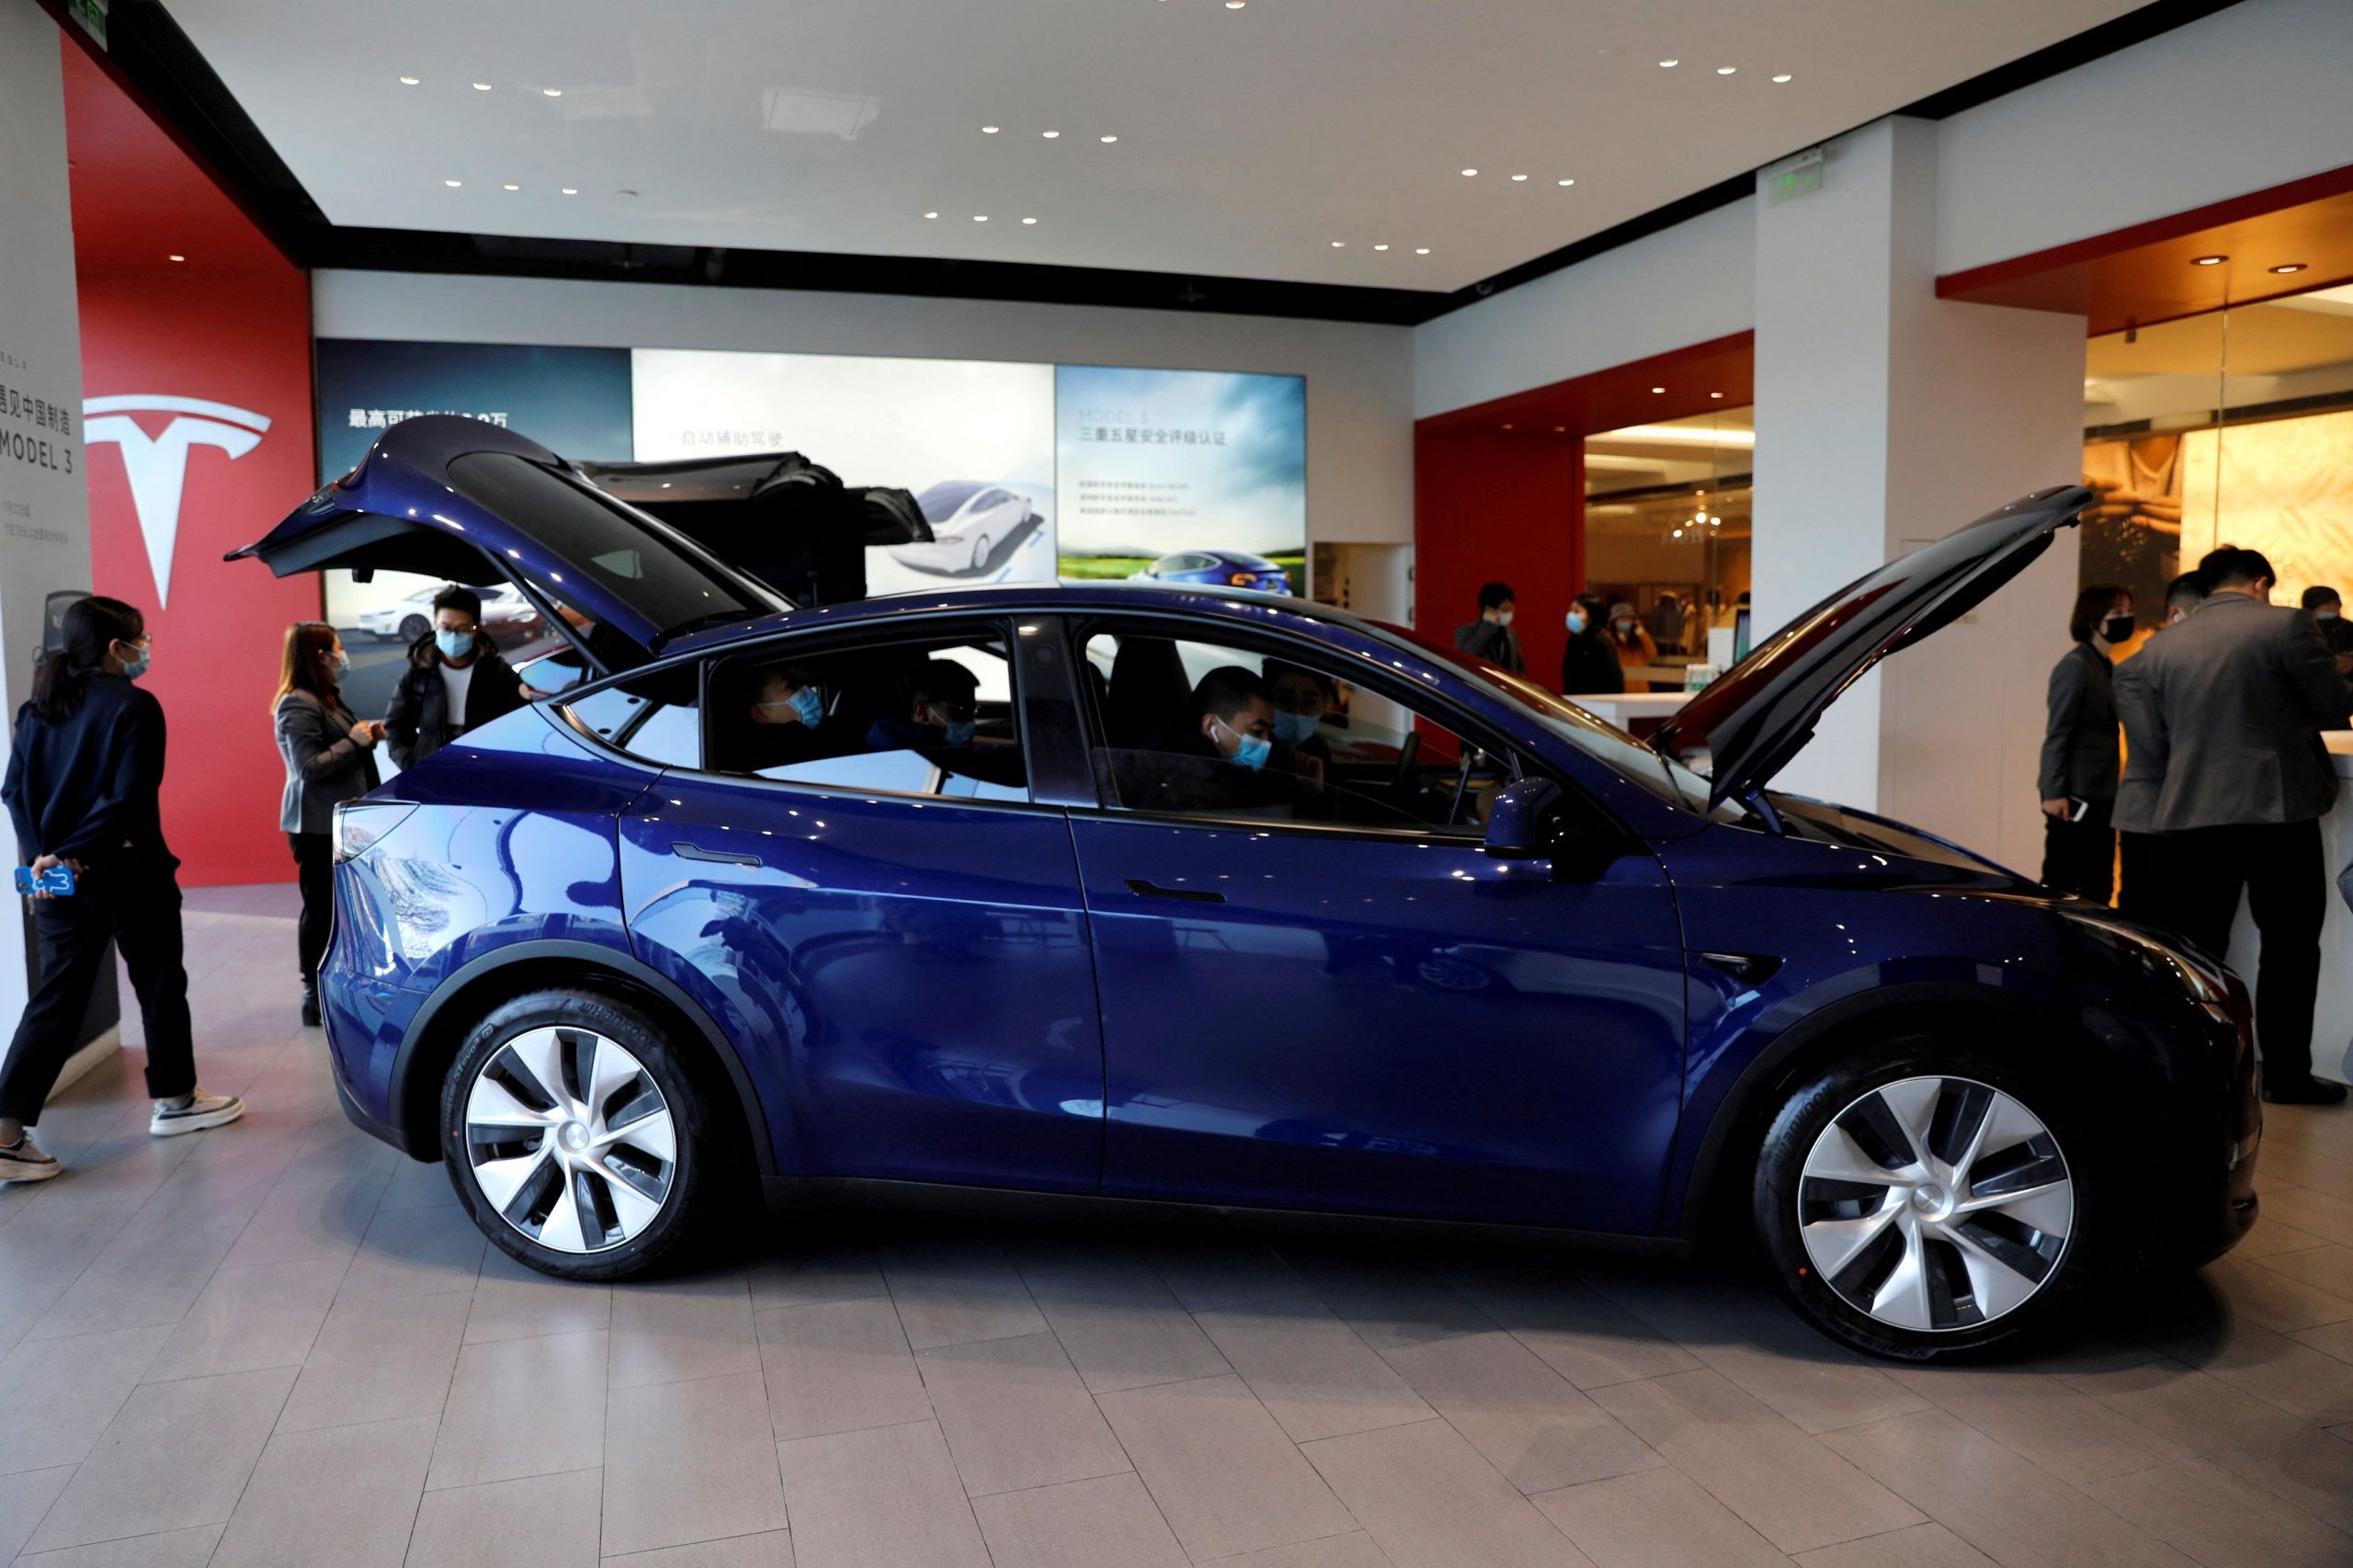 Ηλεκτρικά οχήματα: Οι μειώσεις τιμών της Tesla δίνουν… πόνο στις start-up του κλάδου